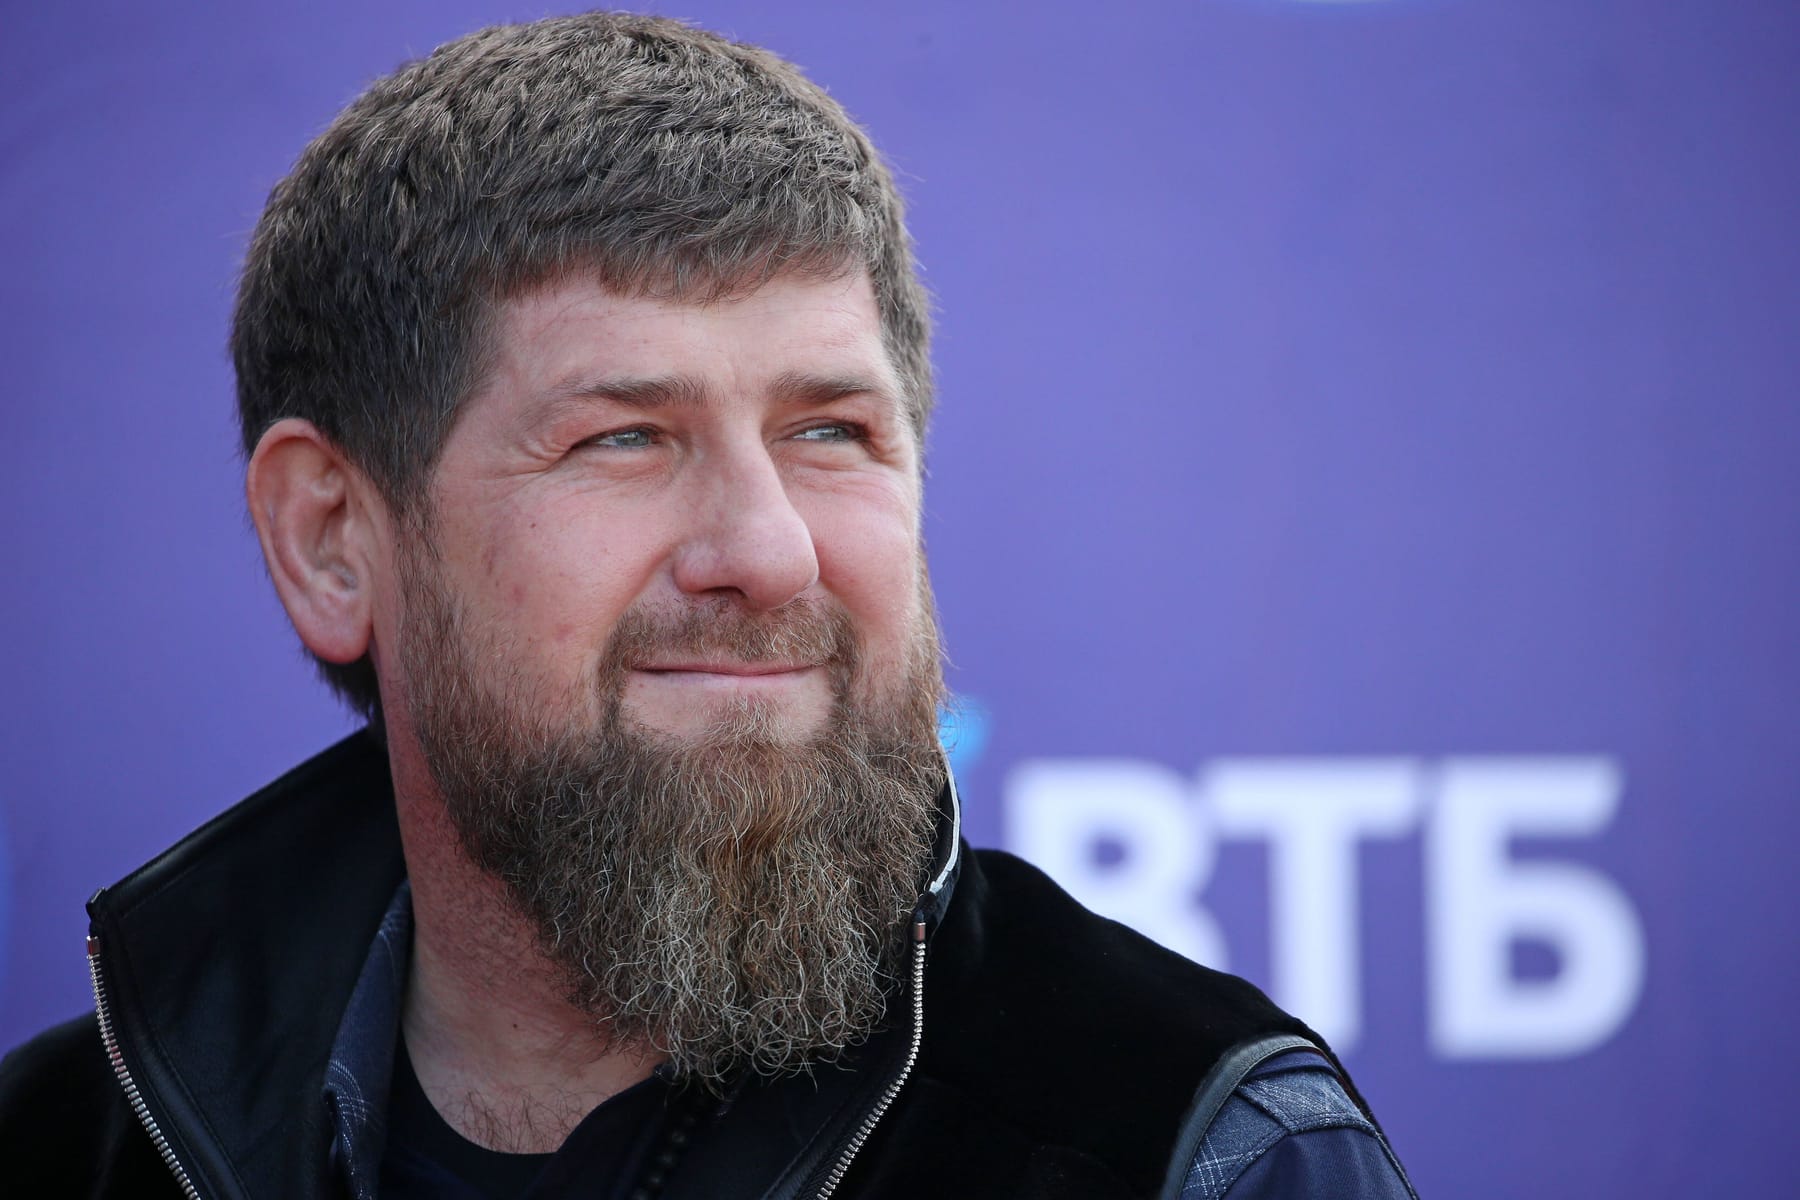 Luxus-Boxsack: Putins Bluthund Kadyrow haut auf 175.000 Dollar ein